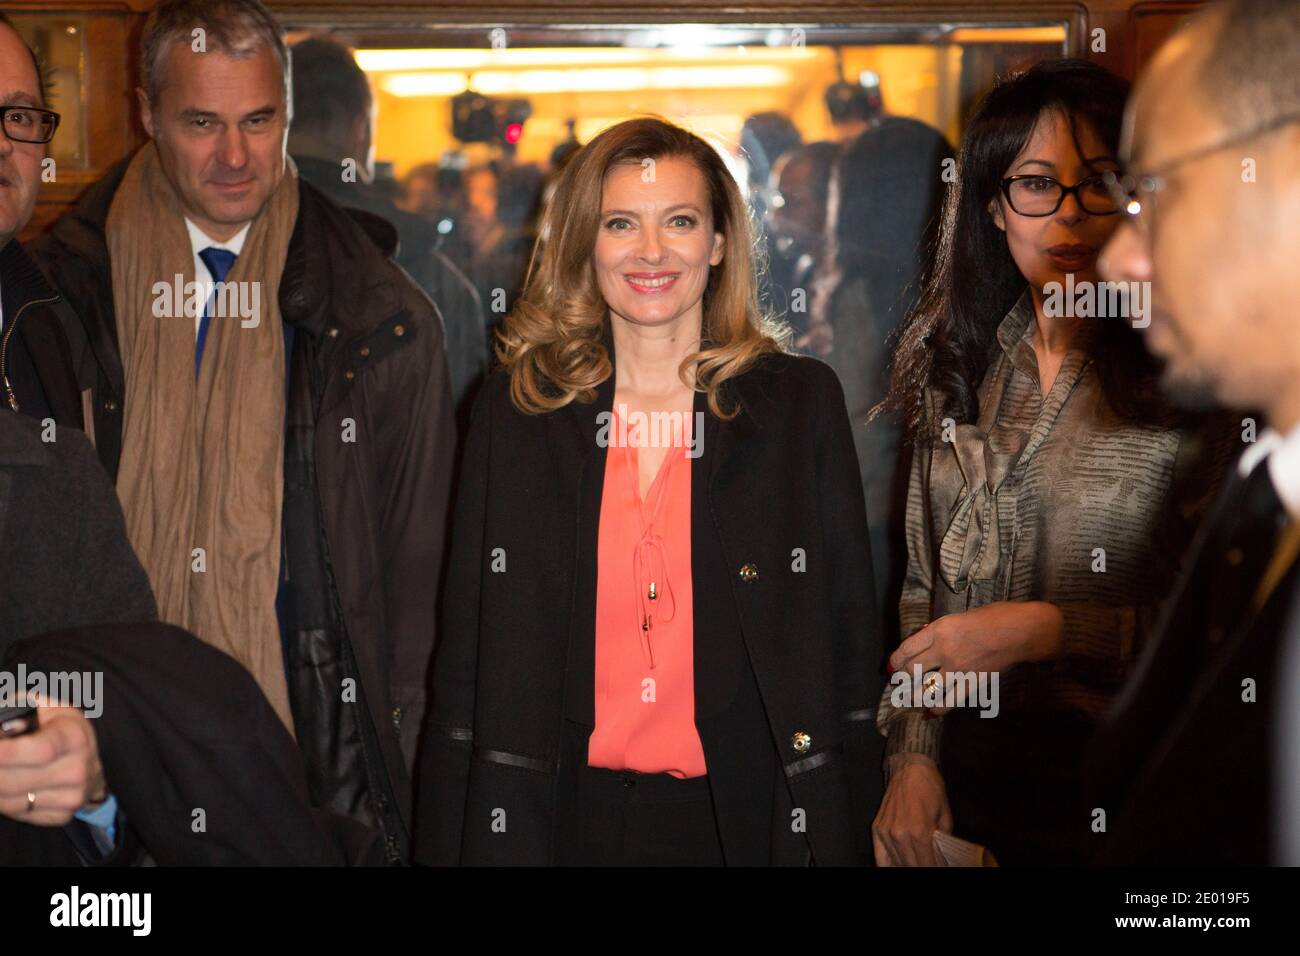 Nella foto di Valerie Trierweiler, il 22 novembre 2013, a Parigi, in Francia, uscì dalla cerimonia del 'Prix Danielle Mitterrand 2013'. Foto di Romain boe/ABACAPRESS.COM Foto Stock